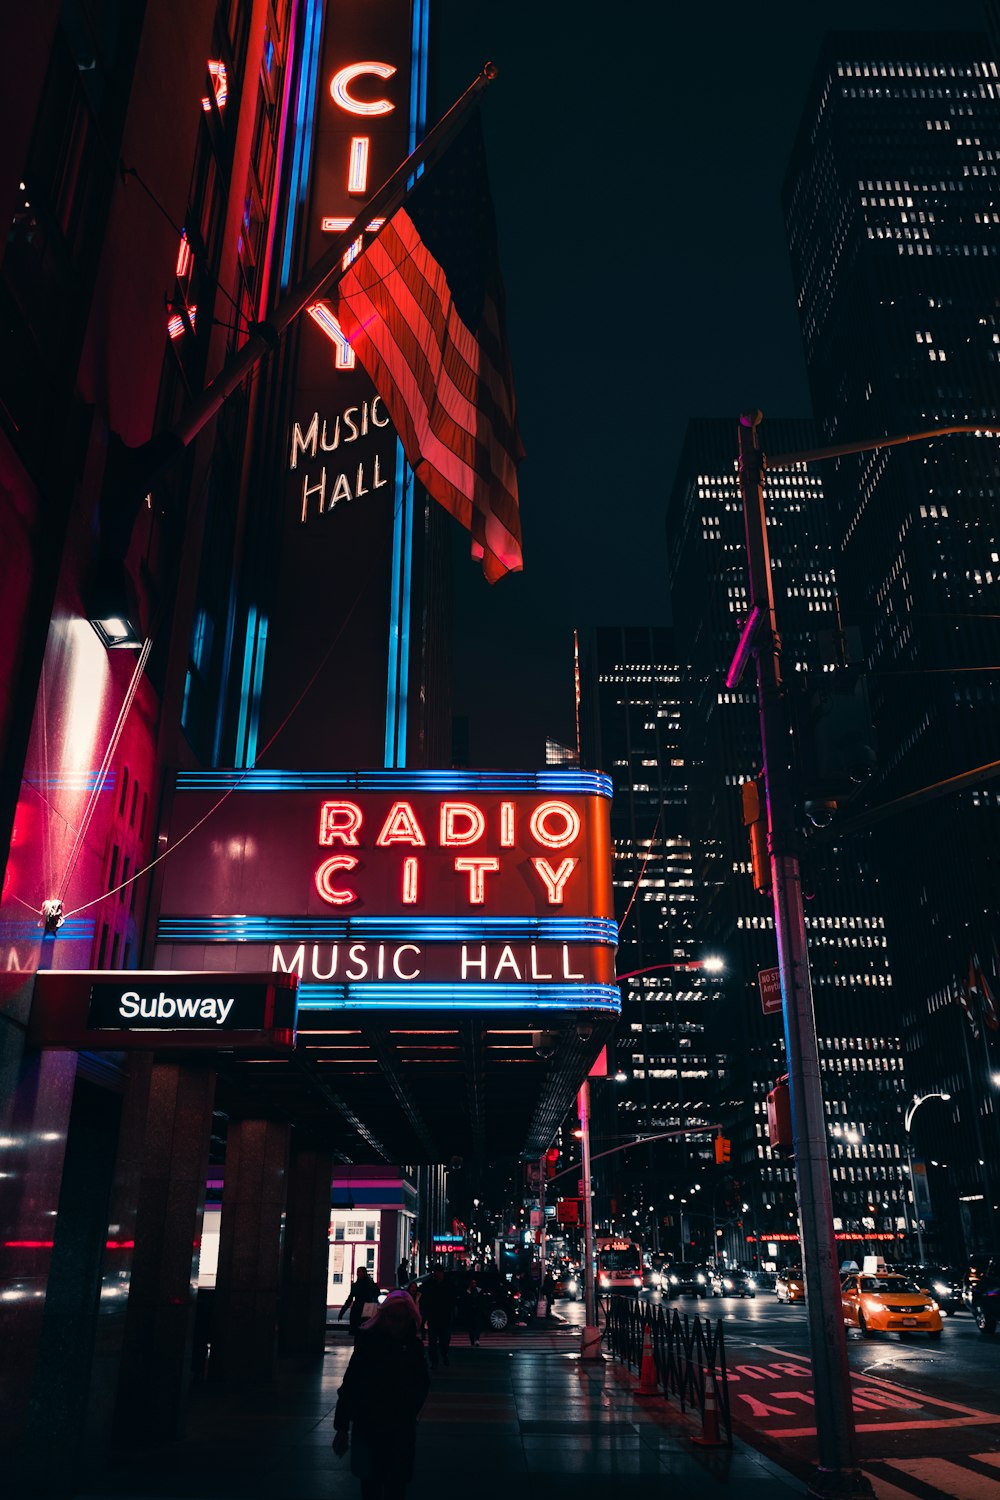 L'insegna di Radio City è illuminata di notte